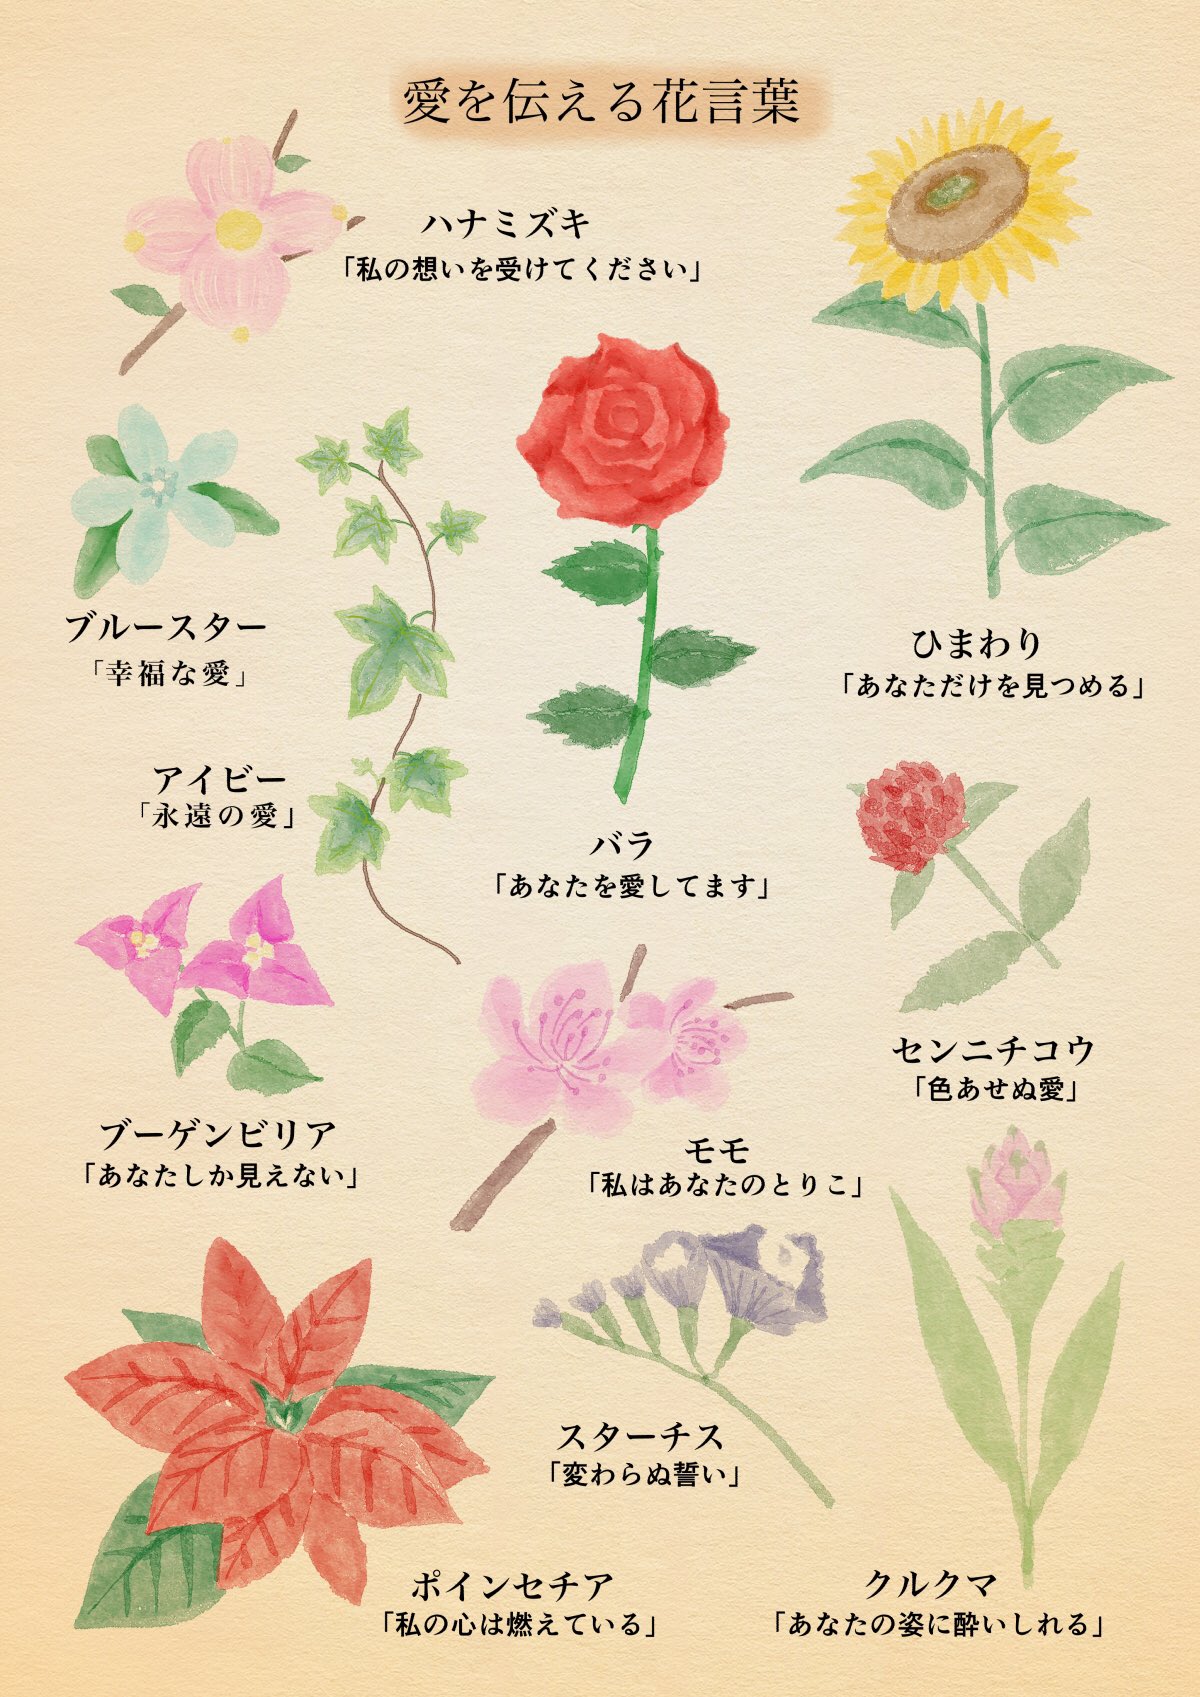 はな言葉 葉菜桜花子 愛を伝える花言葉の他にも素敵な花言葉をたくさん掲載している書籍です よろしくお願いします T Co Oua2n0lopx Twitter